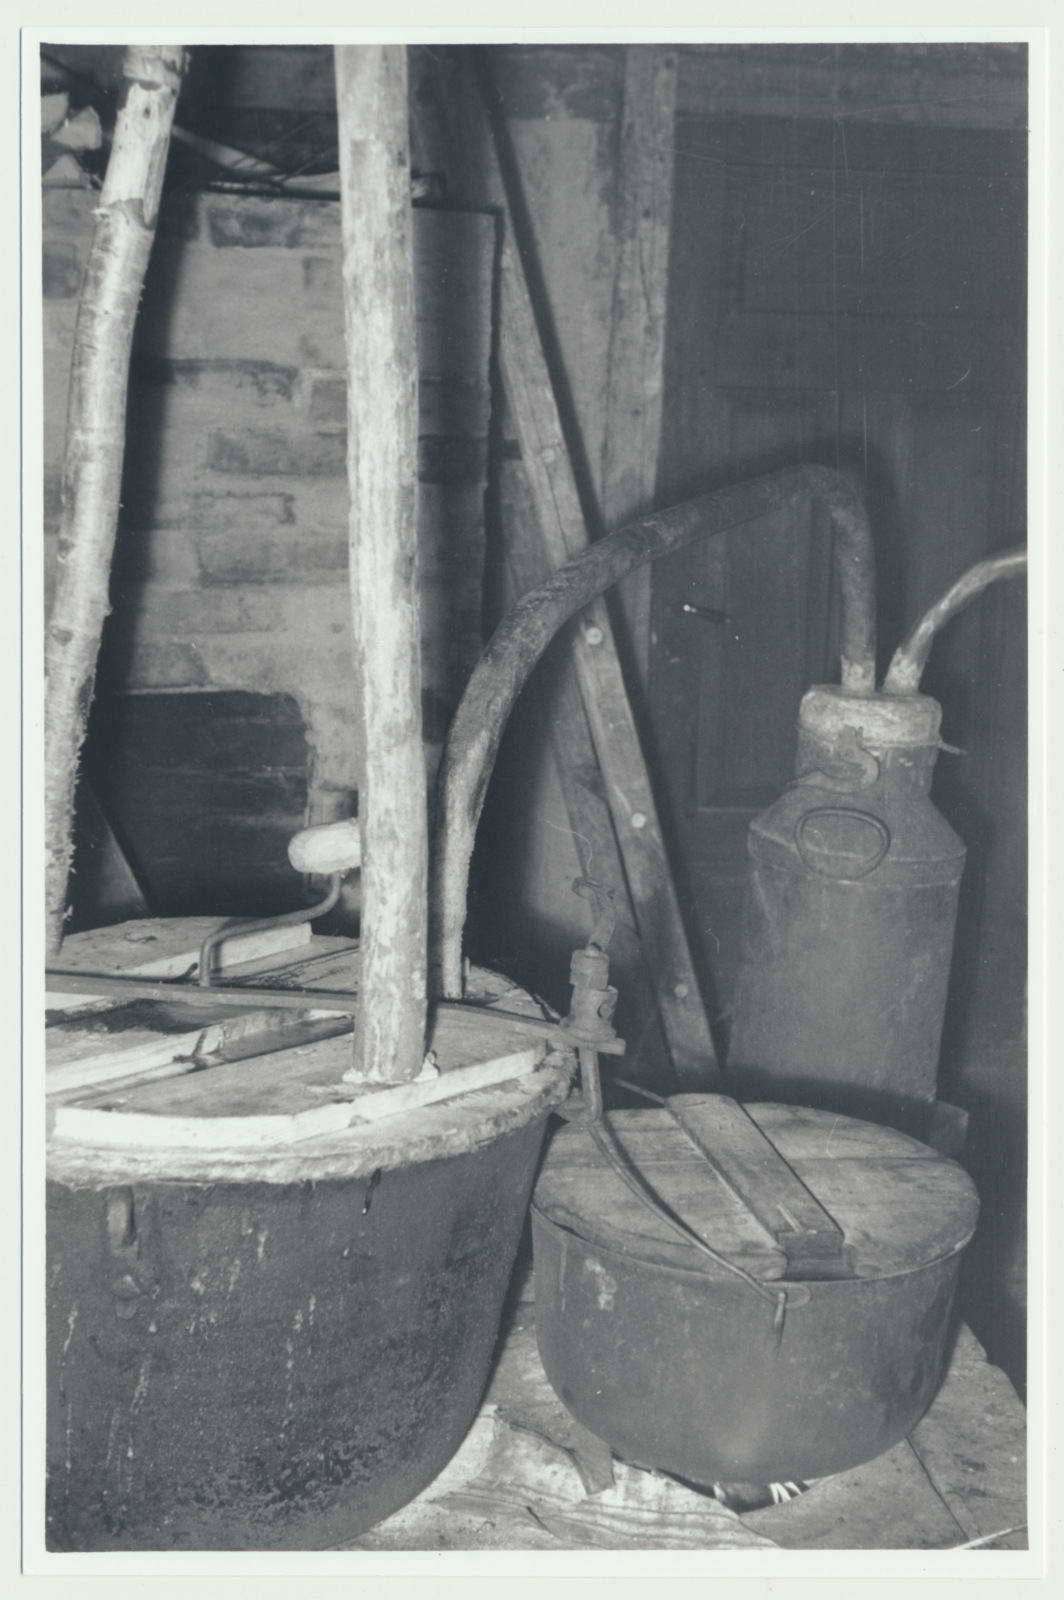 foto, Raplamaa, alkoholi destilleerimine (puskari tegemine), 1959, foto L. Kadalipp